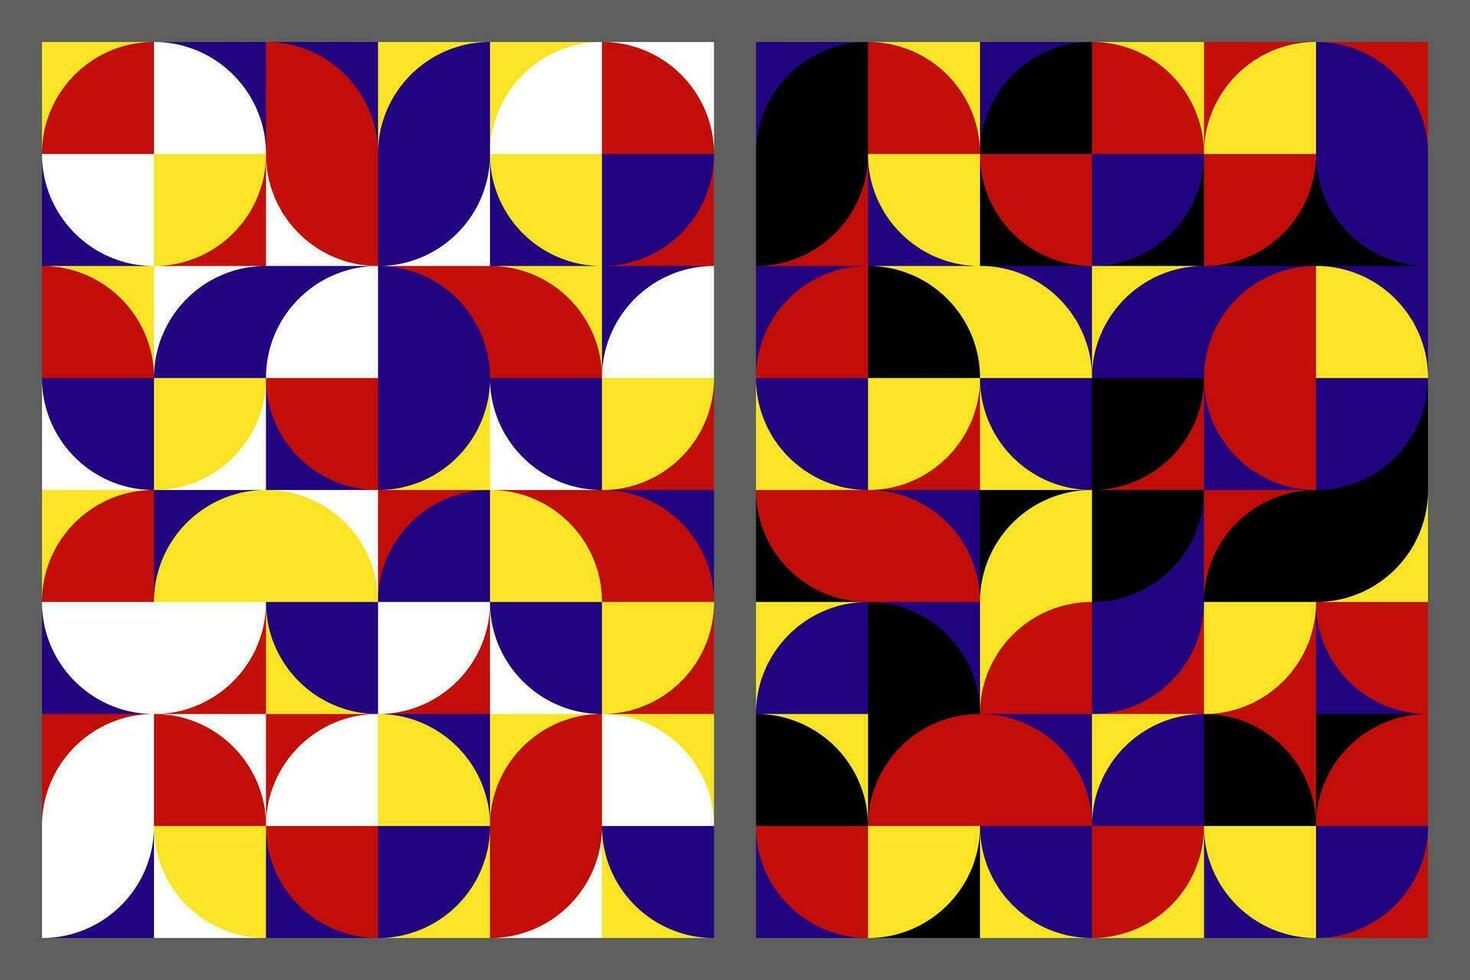 meetkundig abstract achtergrond patroon. bauhaus stijl kunst. cirkel, halve cirkel, vierkant. ontworpen gebruik makend van primair kleur tonen. vector illustratie.